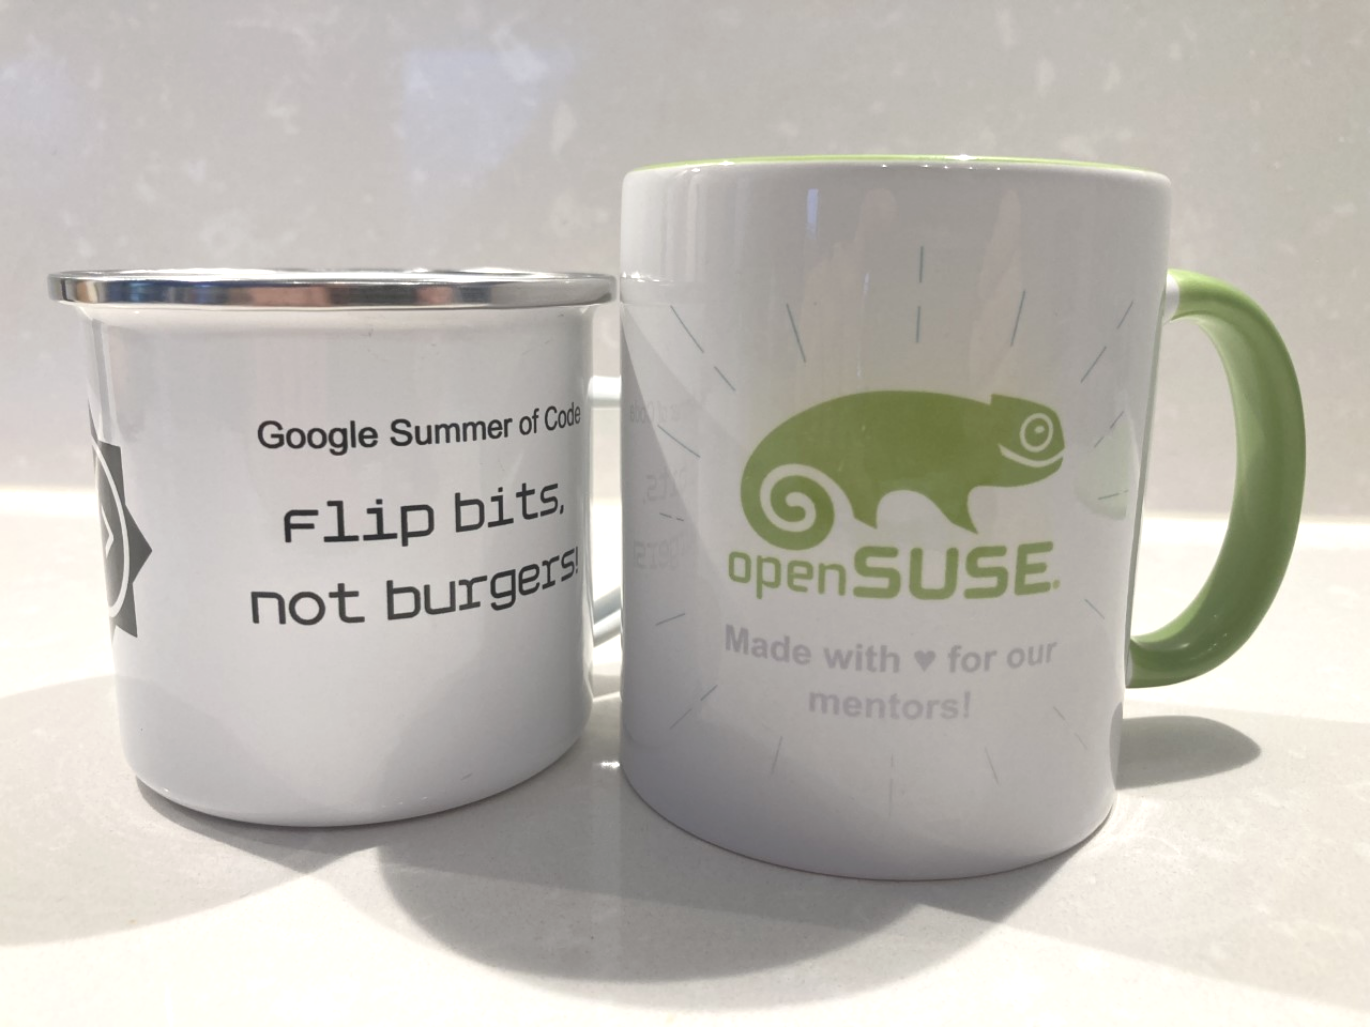 openSUSE 项目计划举行研讨会以增加指导工作